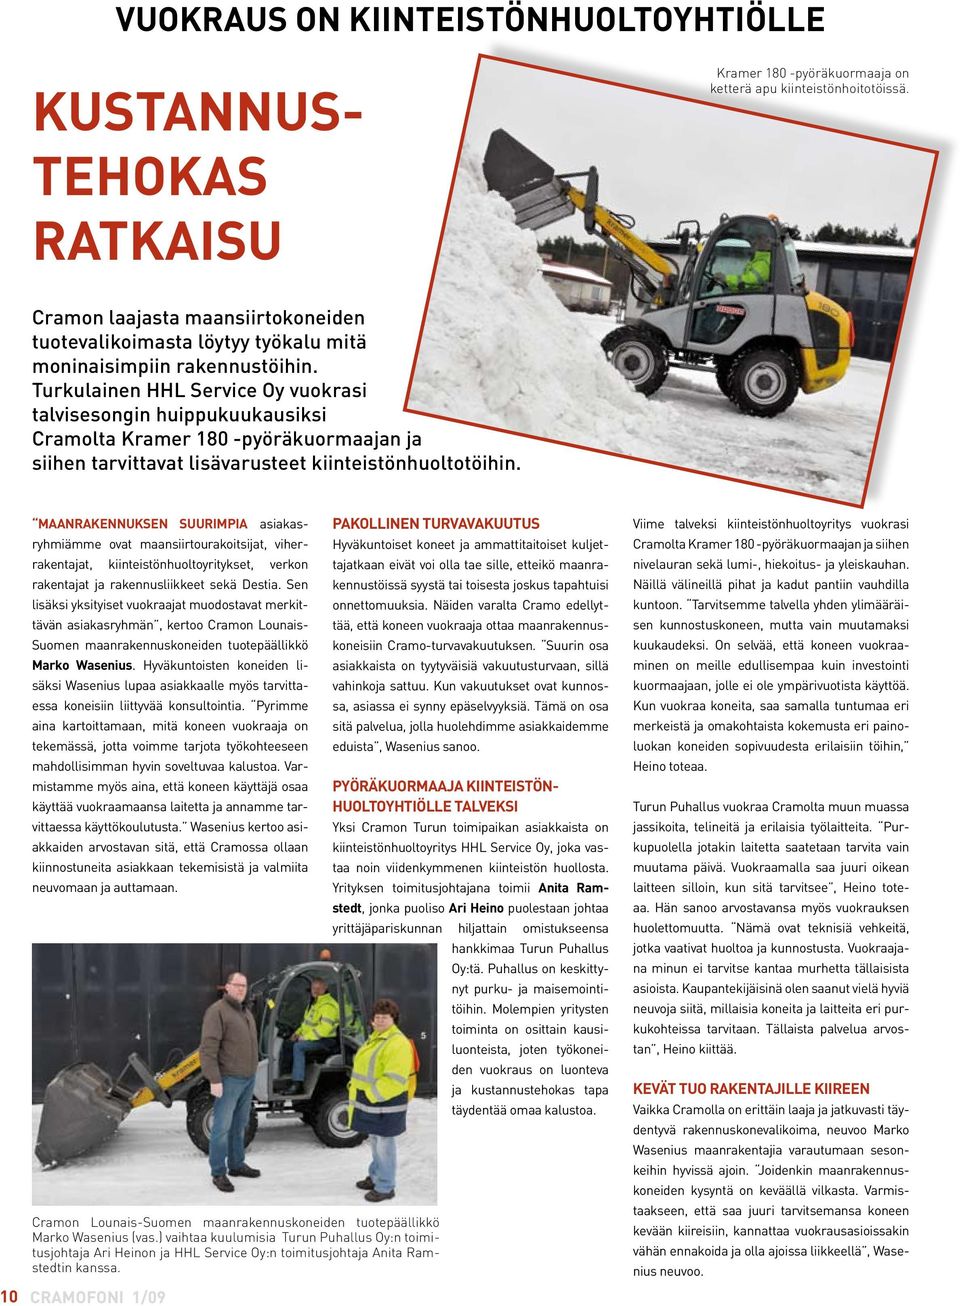 Turkulainen HHL Service Oy vuokrasi talvisesongin huippukuukausiksi Cramolta Kramer 180 -pyöräkuormaajan ja siihen tarvittavat lisävarusteet kiinteistönhuoltotöihin.